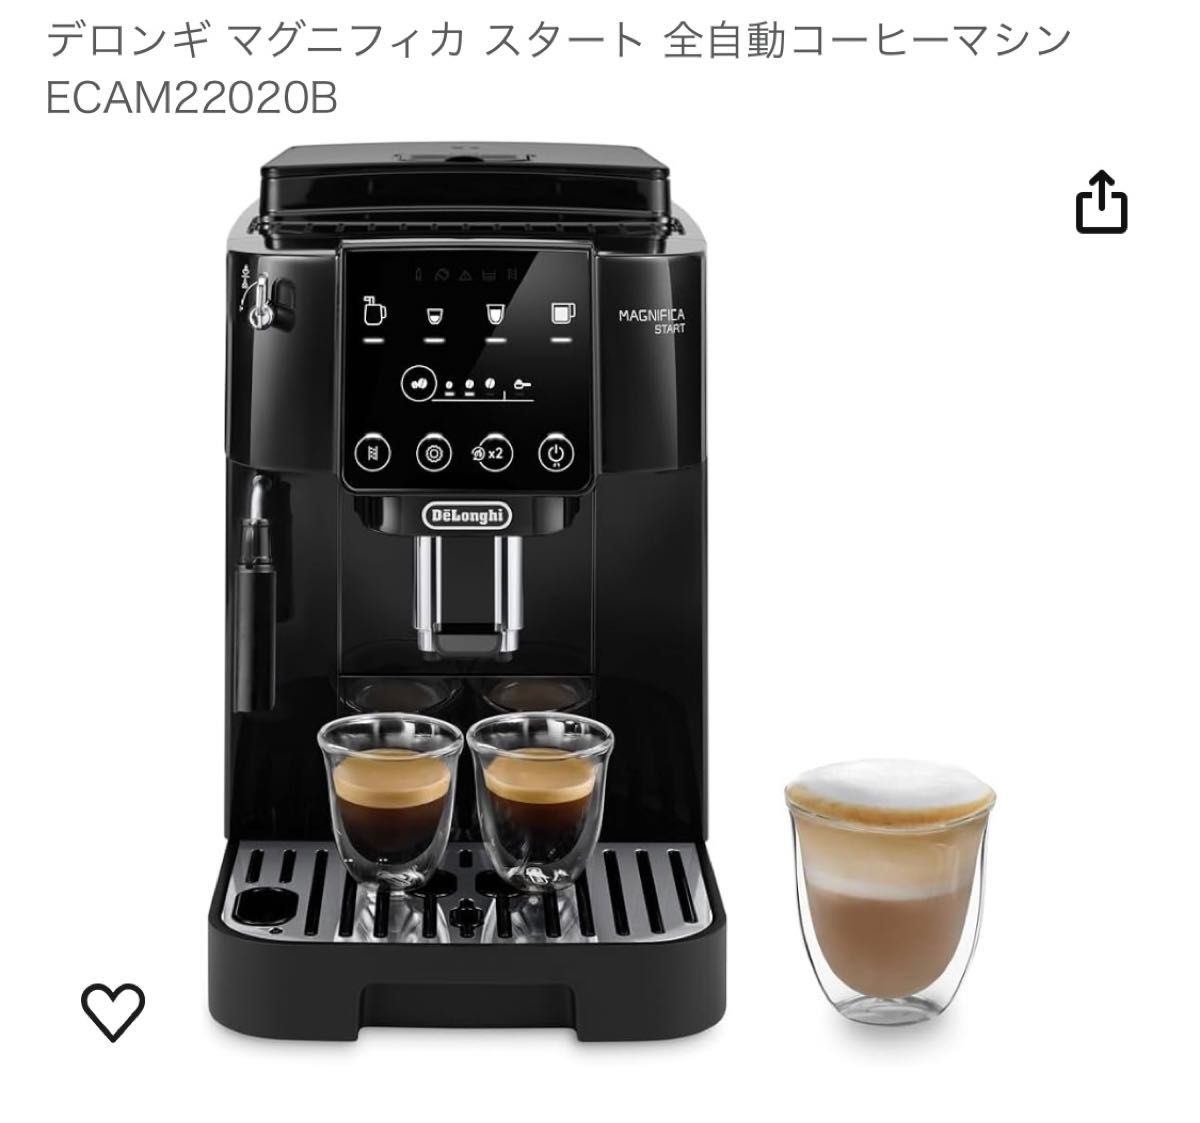 デロンギ マグニフィカ スタート 全自動コーヒーマシン ECAM22020B 新品未開封品